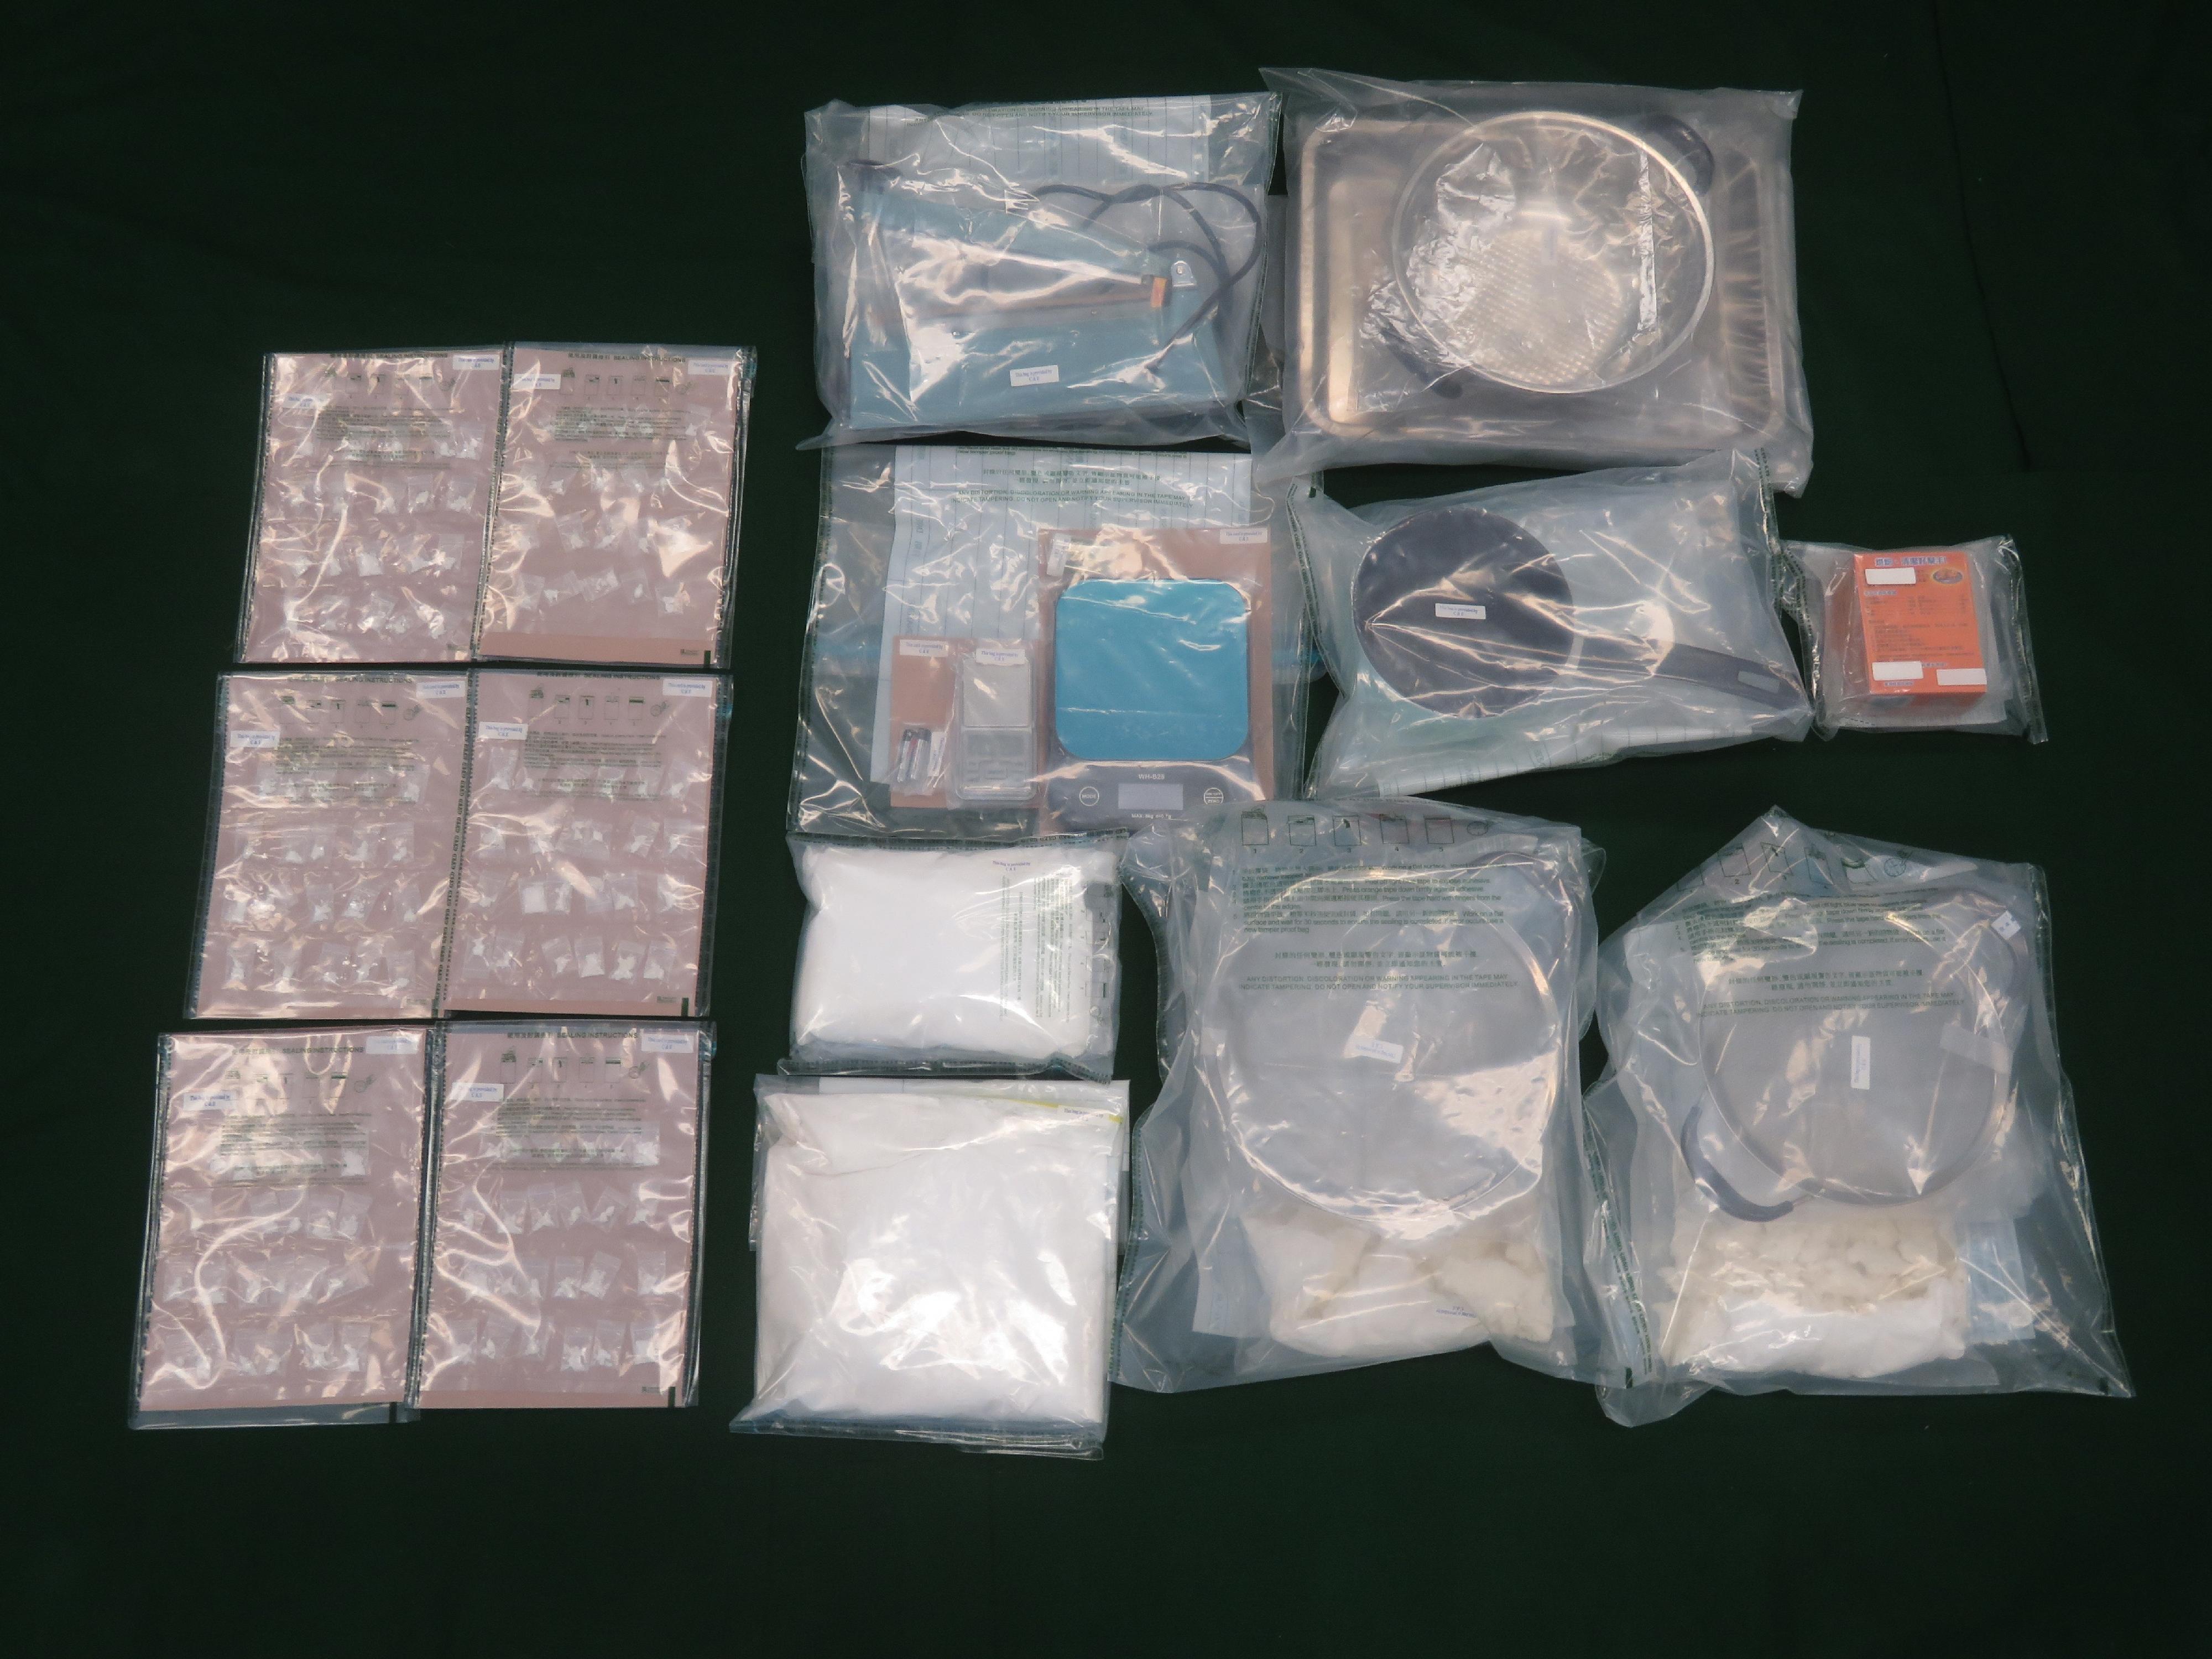 香港海關昨日（七月九日）在深水埗檢獲約一點一公斤懷疑可卡因及約五百四十克懷疑霹靂可卡因，估計市值共約一百九十萬元。圖示檢獲的懷疑毒品和製毒及包裝工具。